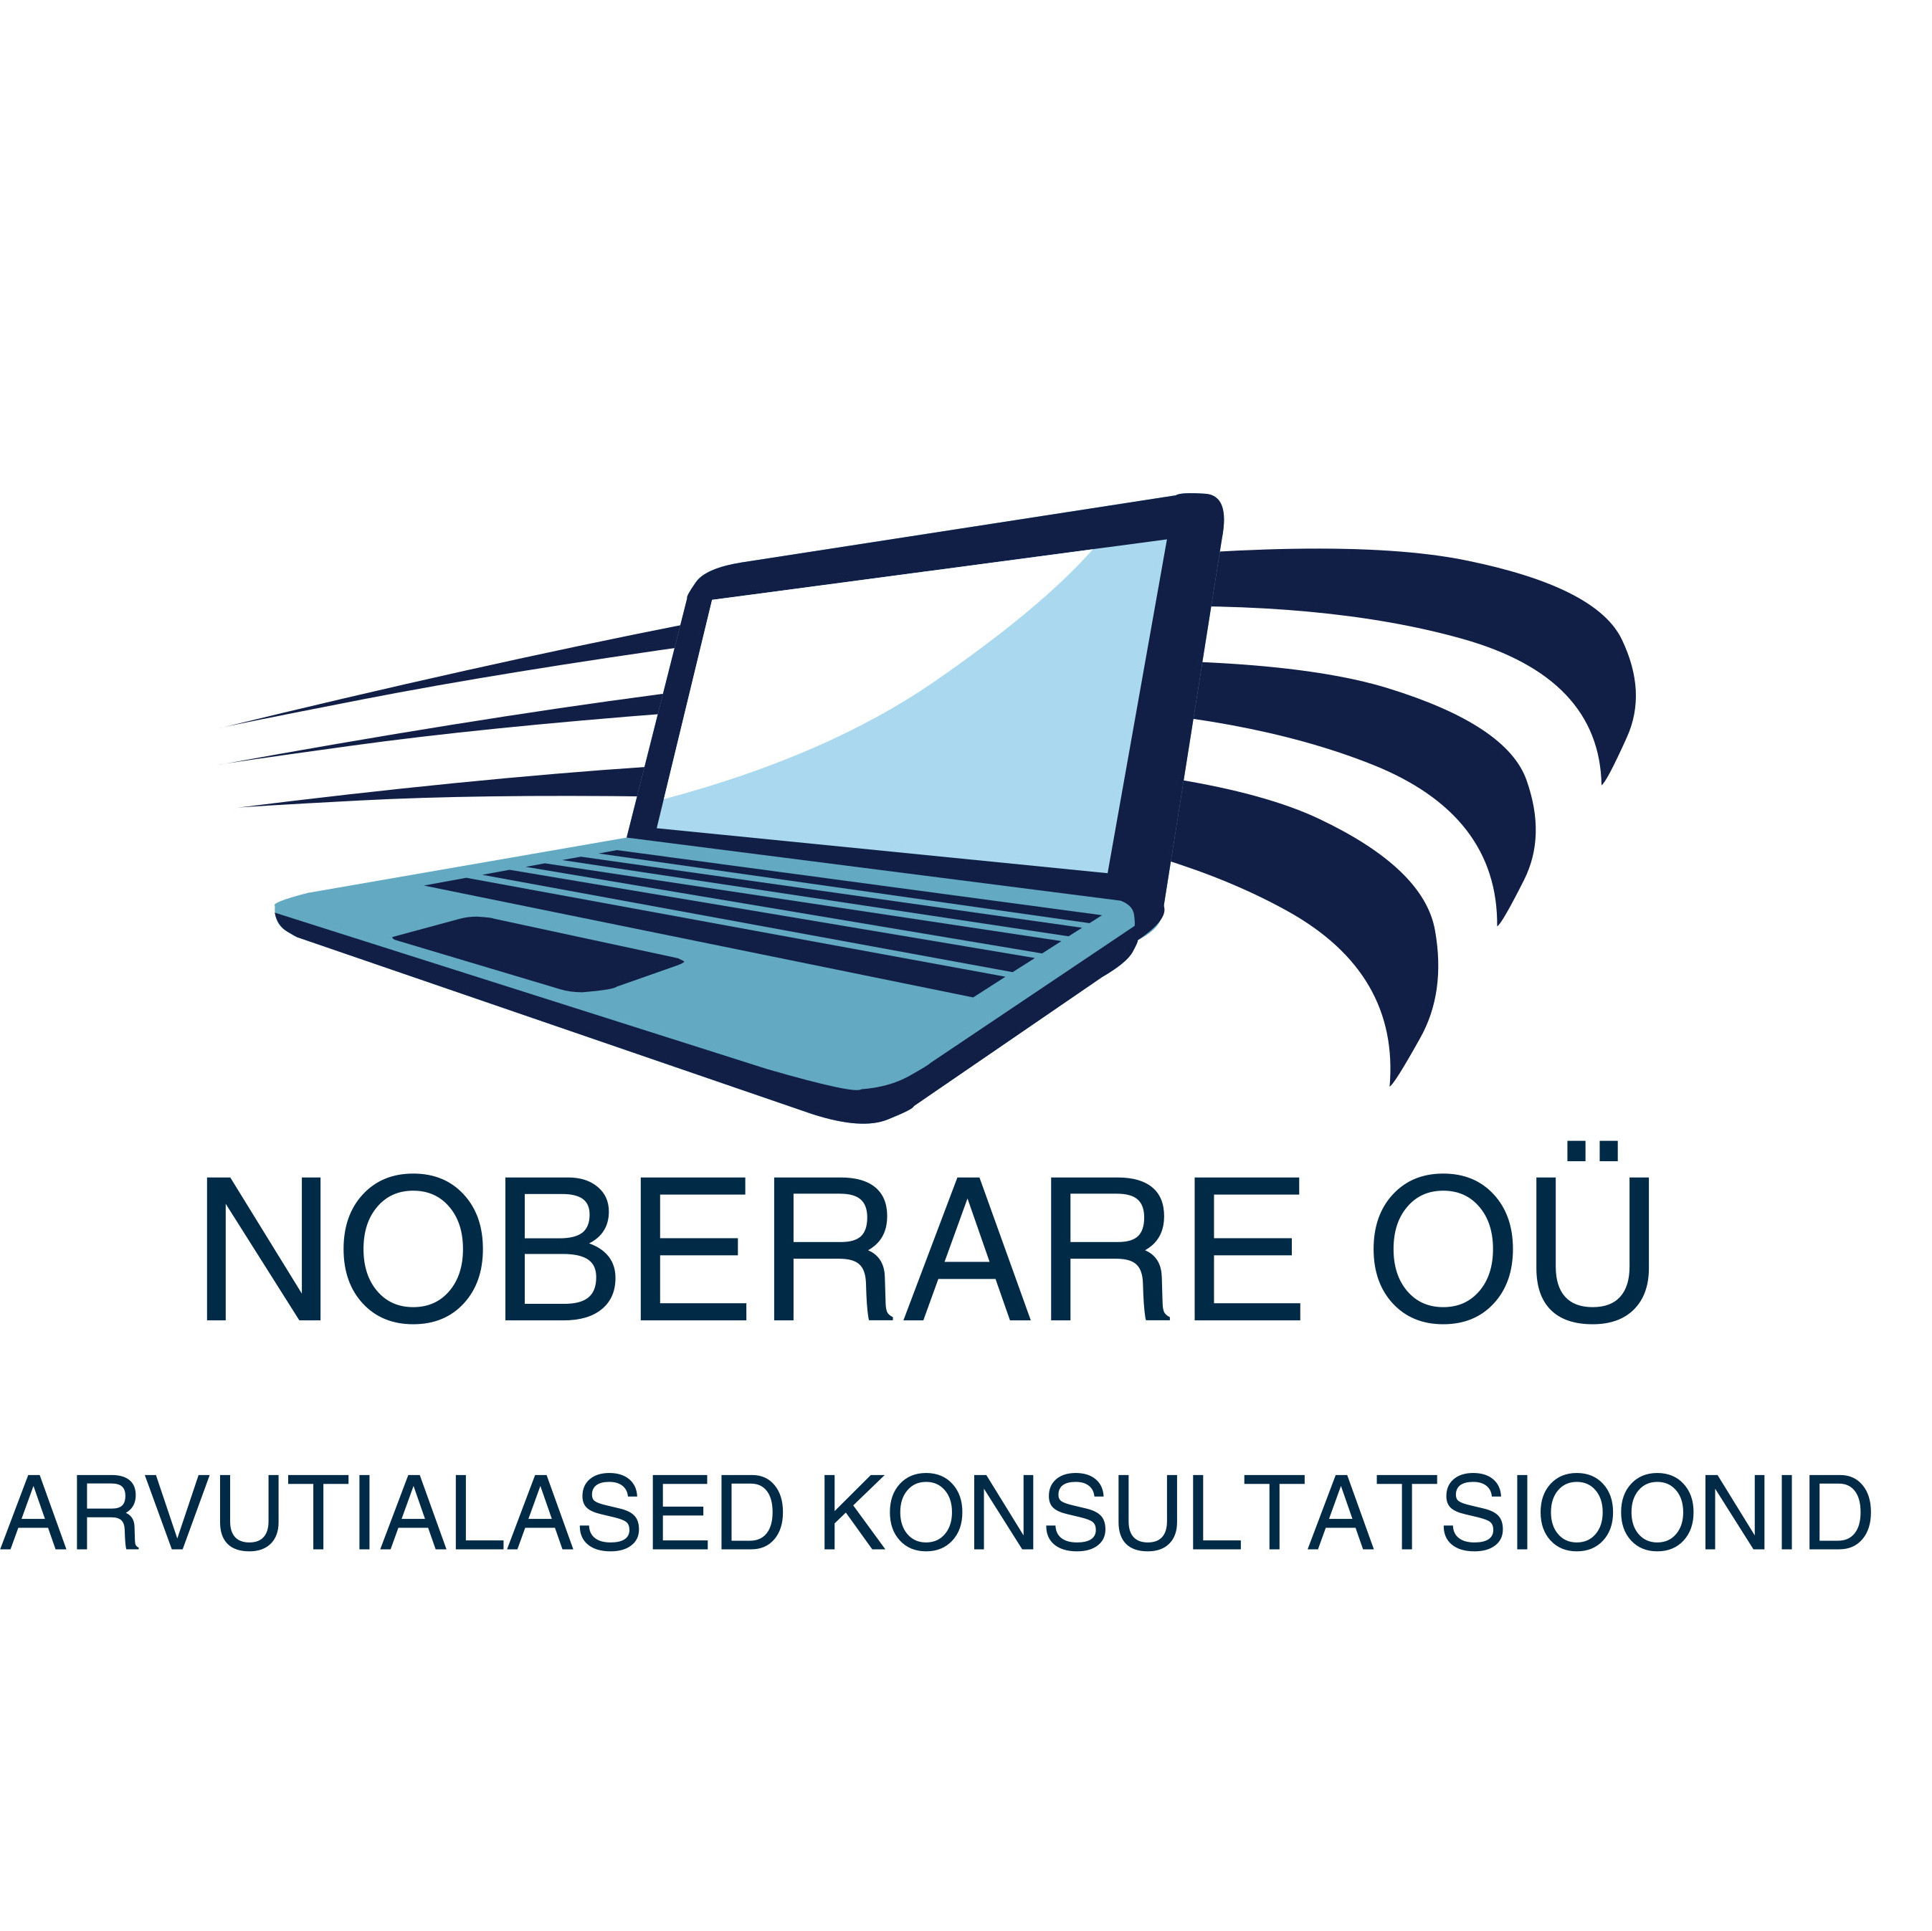 NOBERARE OÜ logo